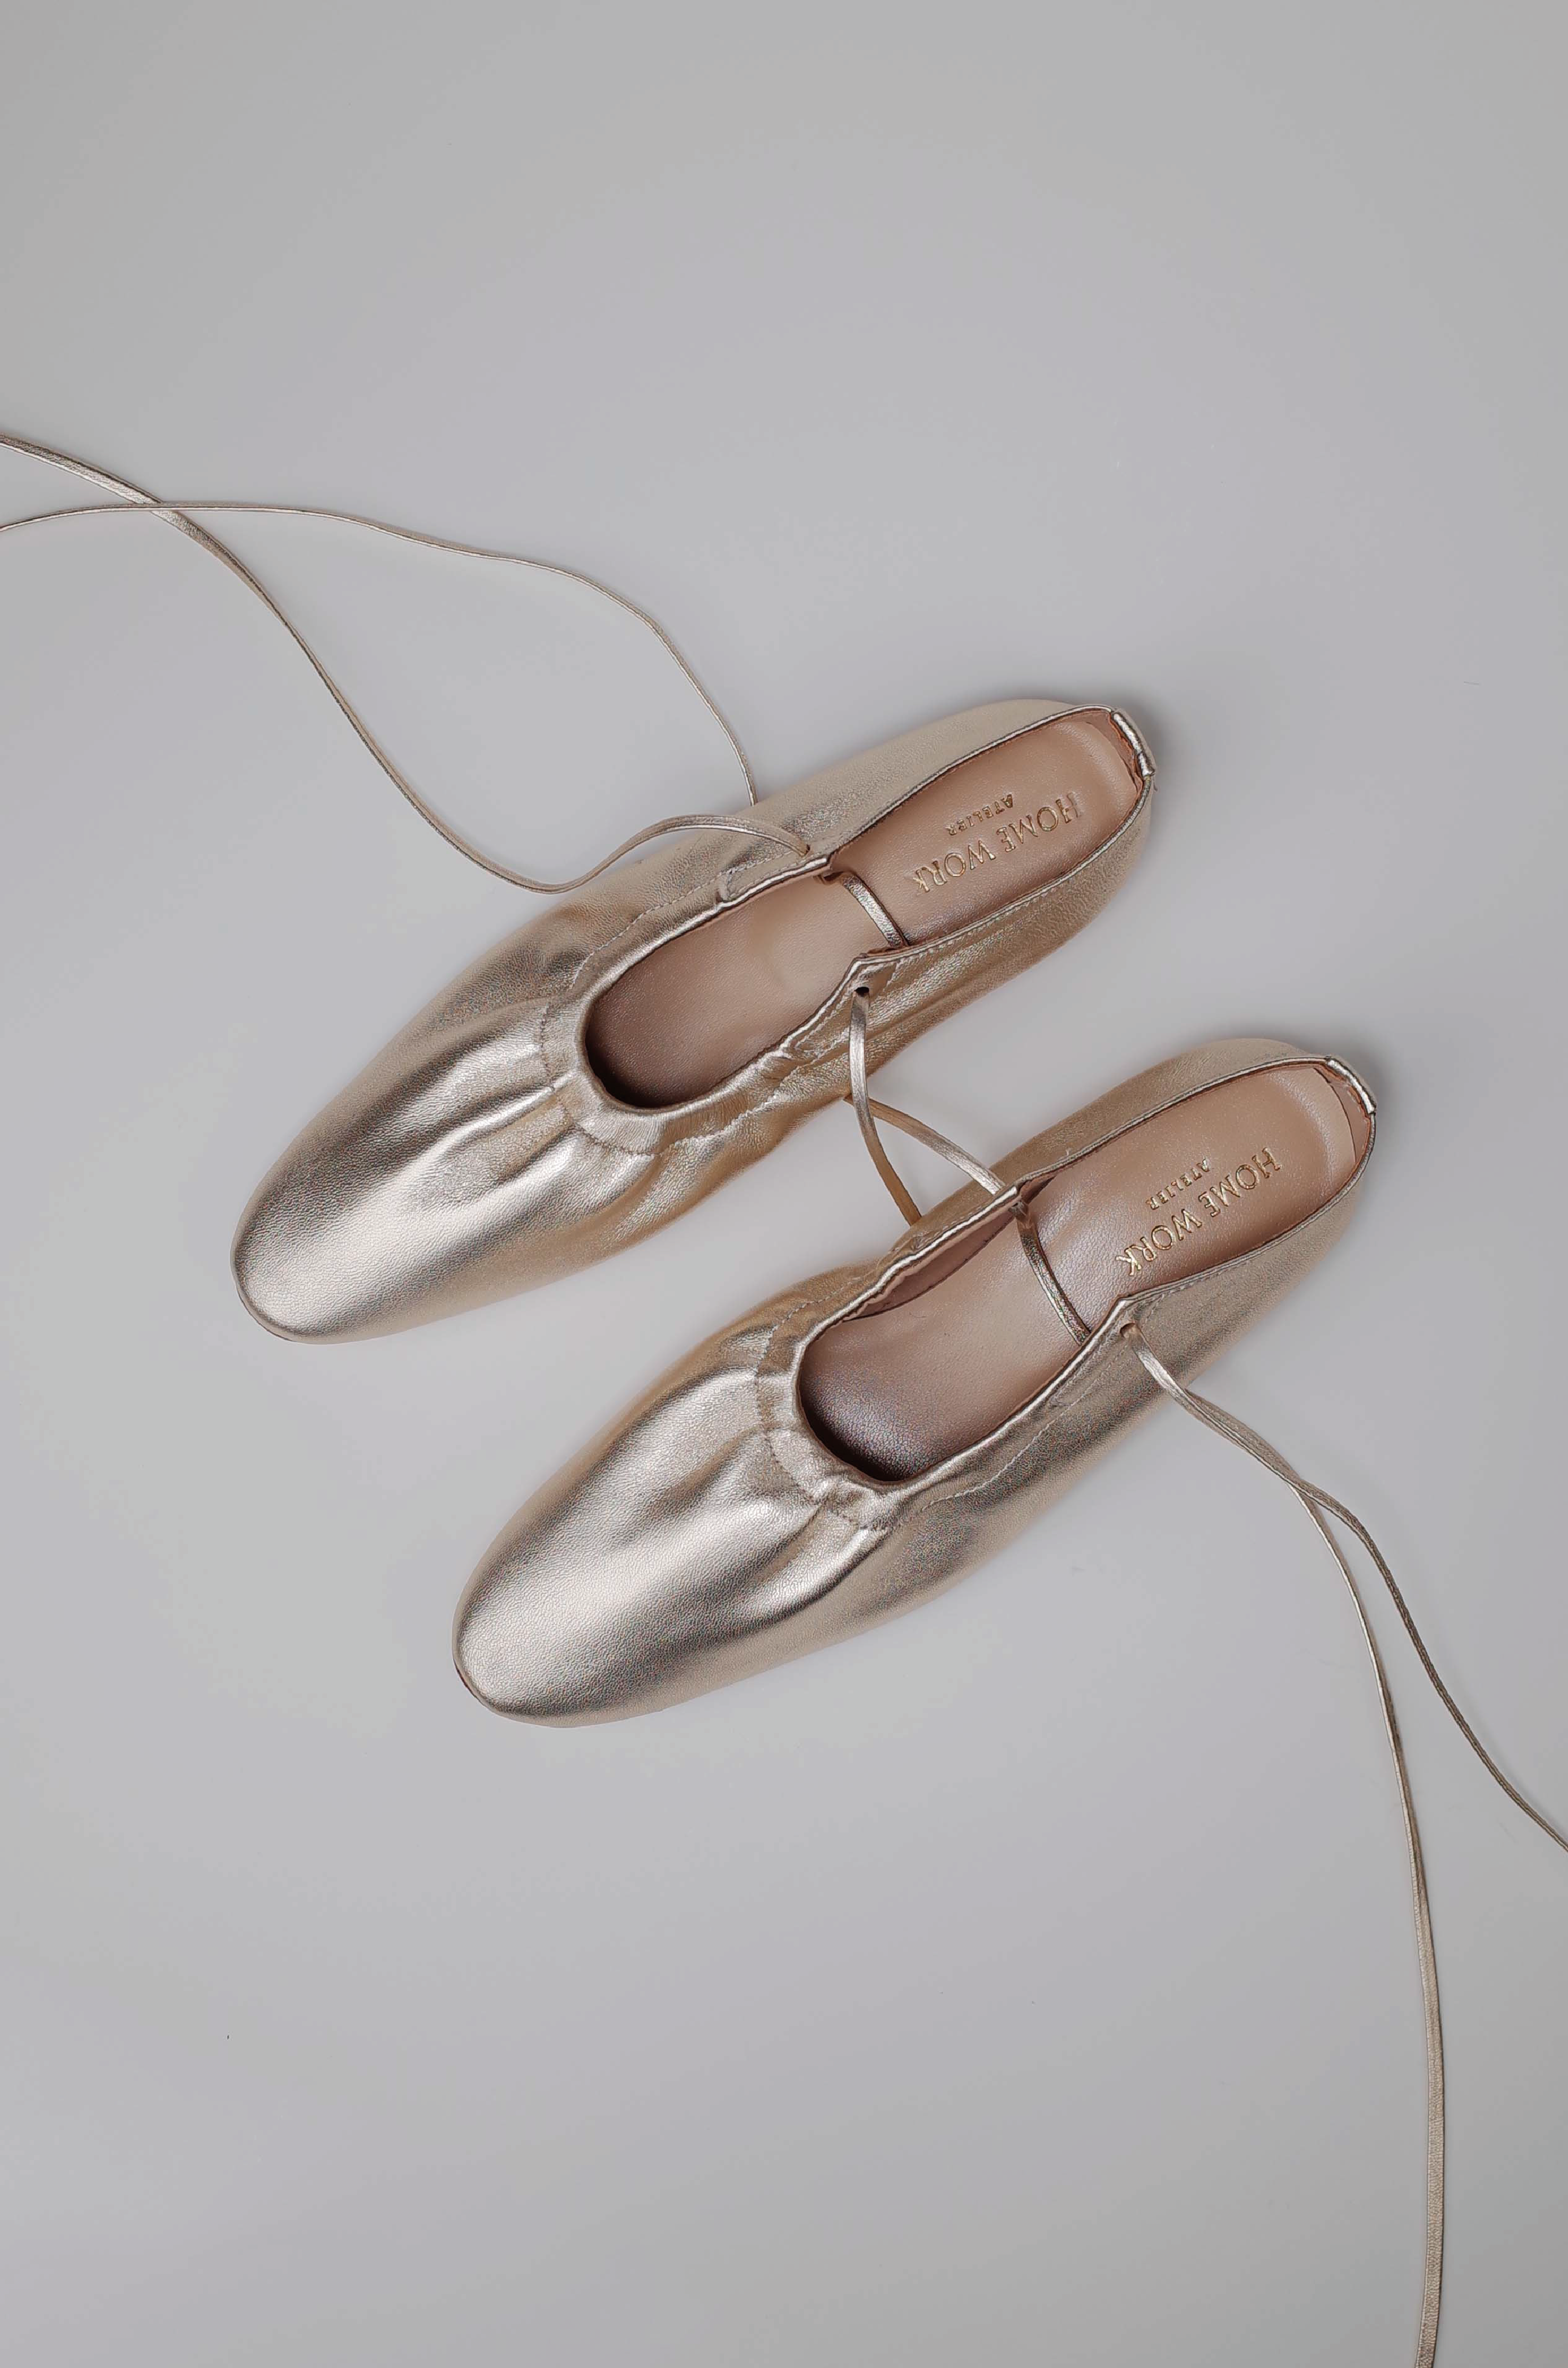 Craftsman Made Leather100% Ballet Shoes (Gold Leaf)